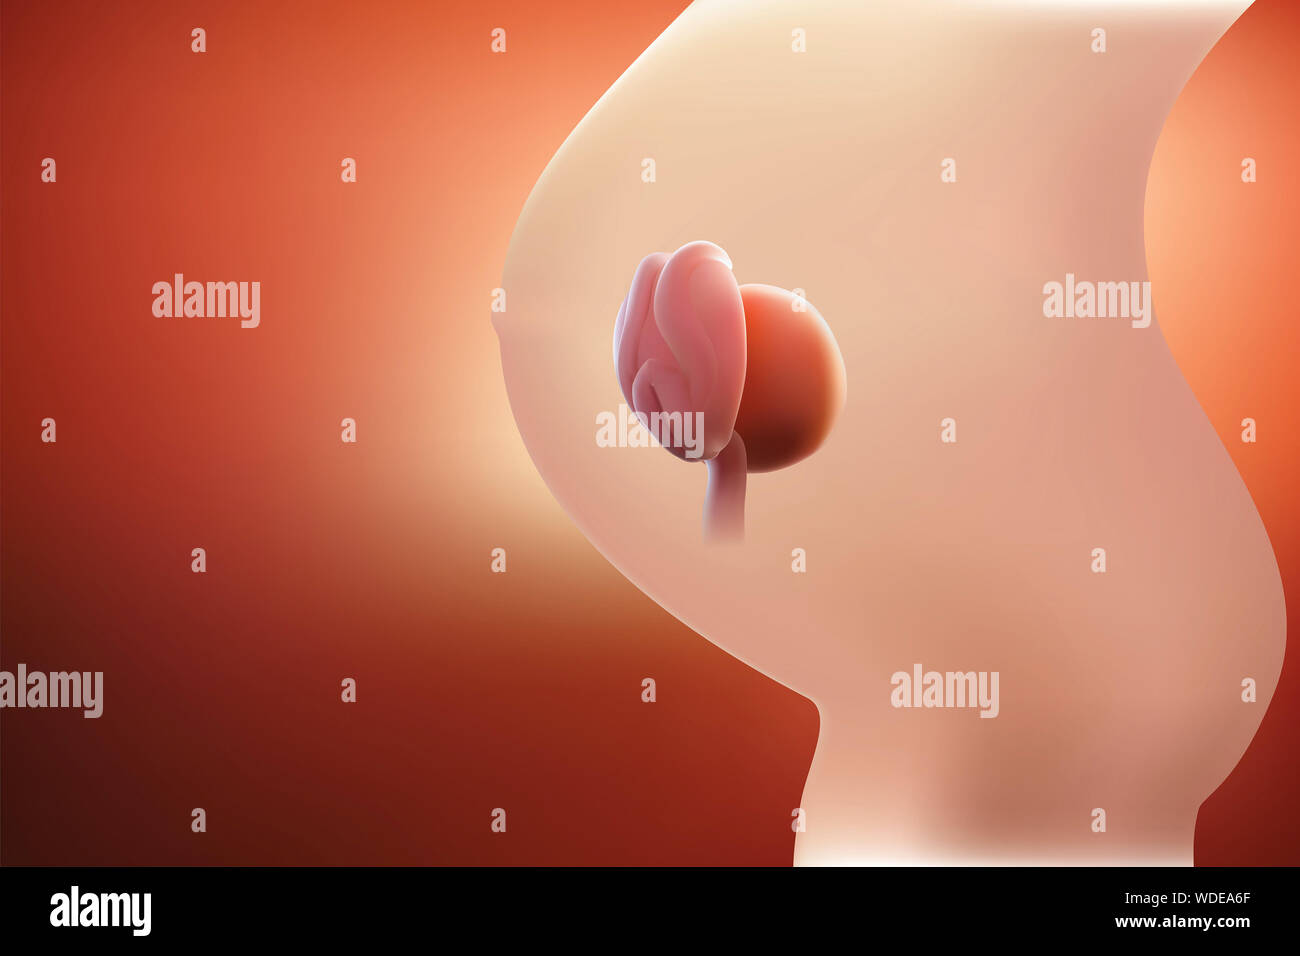 L'immagine dell'embrione o all'uovo nel grembo della madre ha una tonalità rossastra. 3D illustrazione Foto Stock